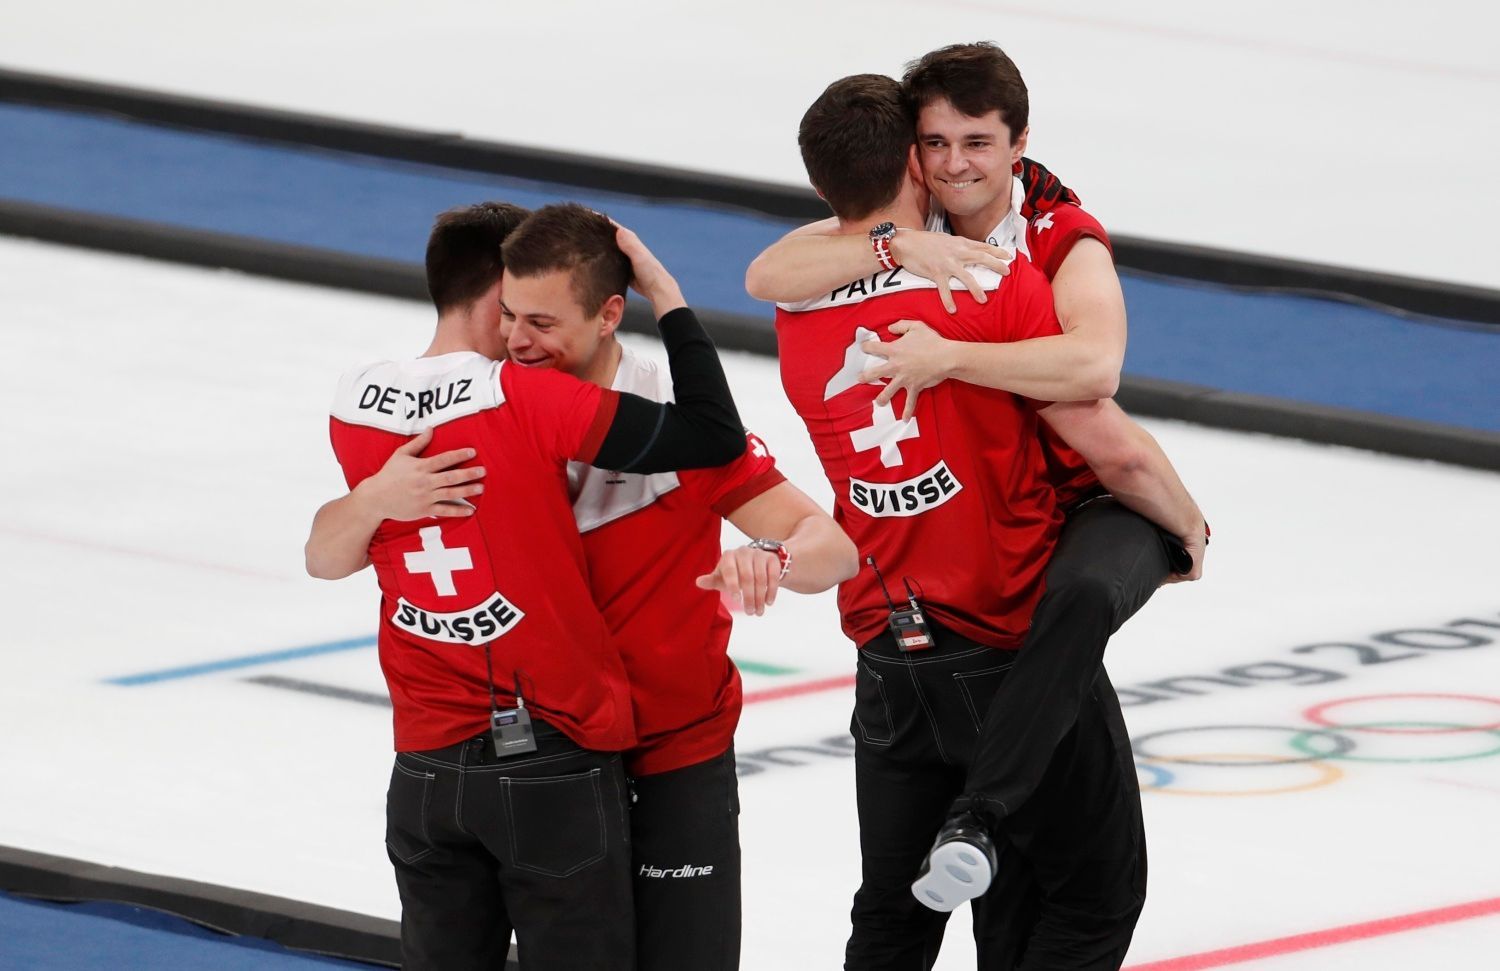 Švýcarští hráči slaví vítězství v zápase o bronz v curlingovém turnaji na ZOH 2018